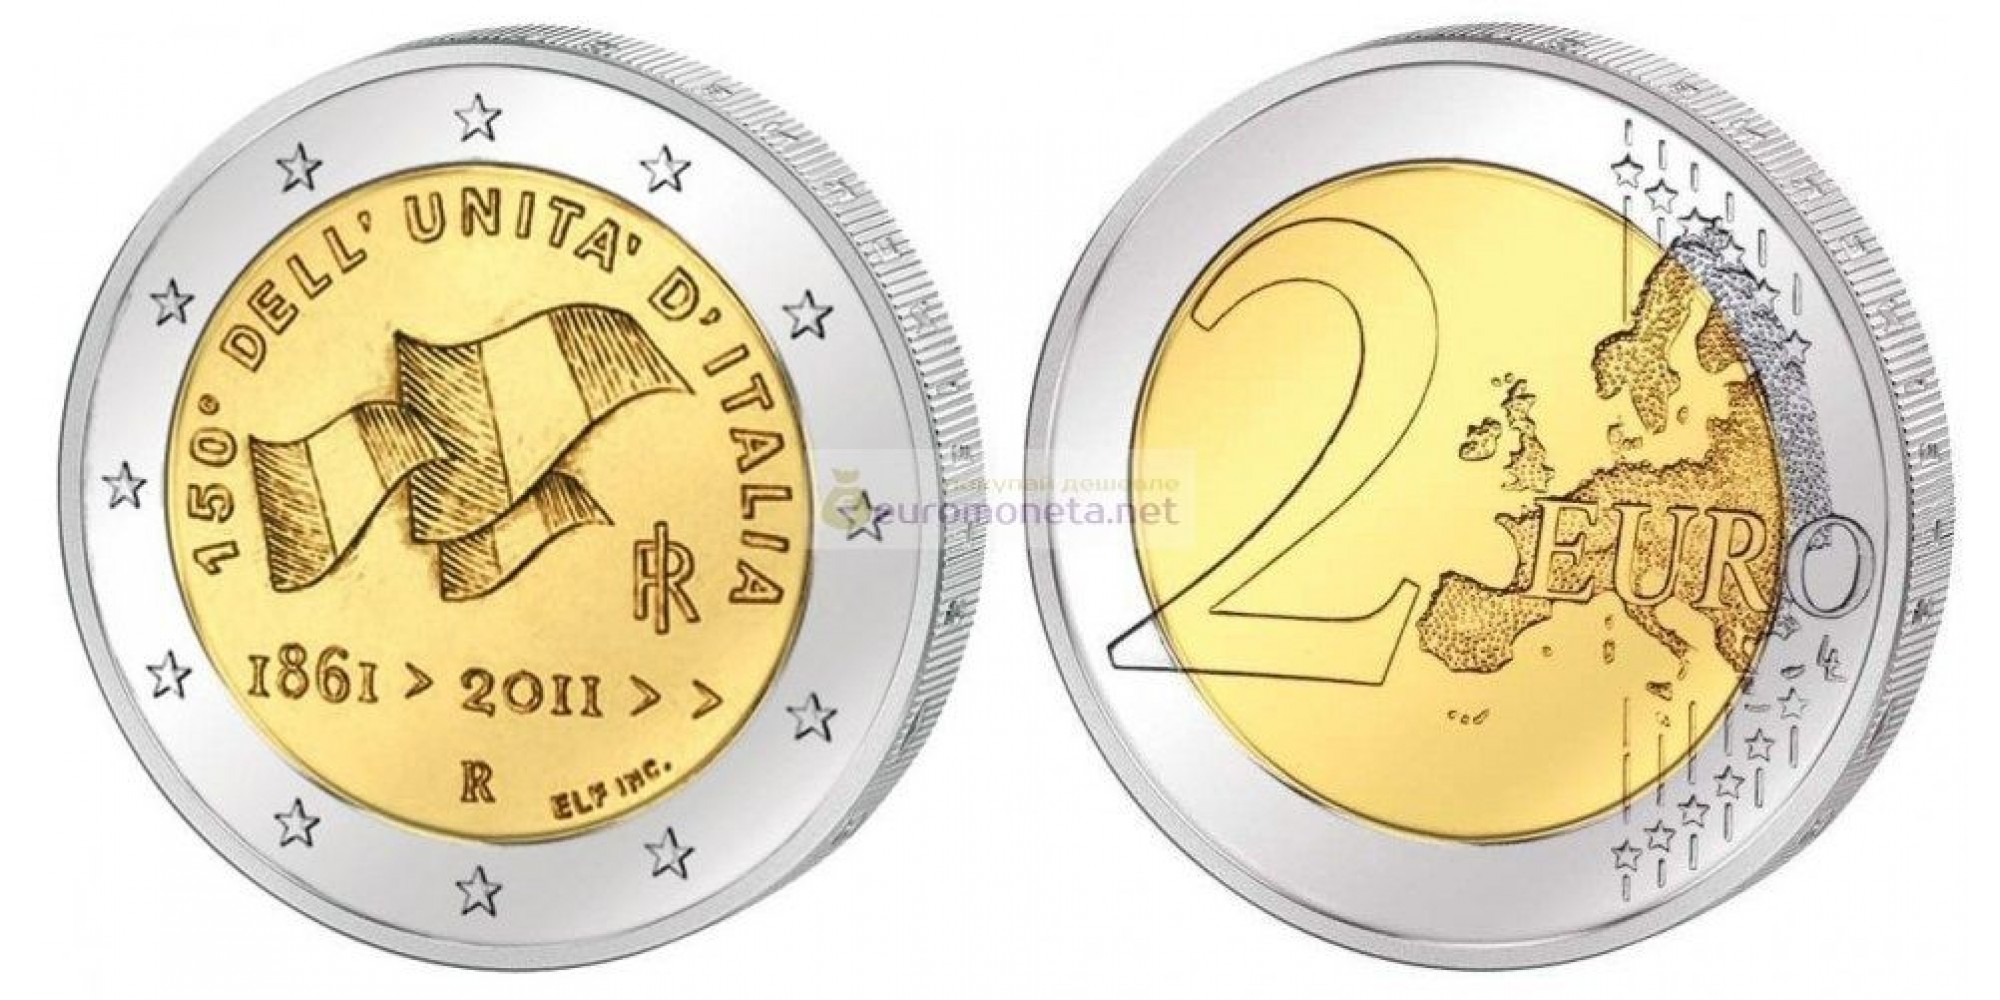 Италия 2 евро 2011 год. 150-летие объединения Италии. АЦ из ролла